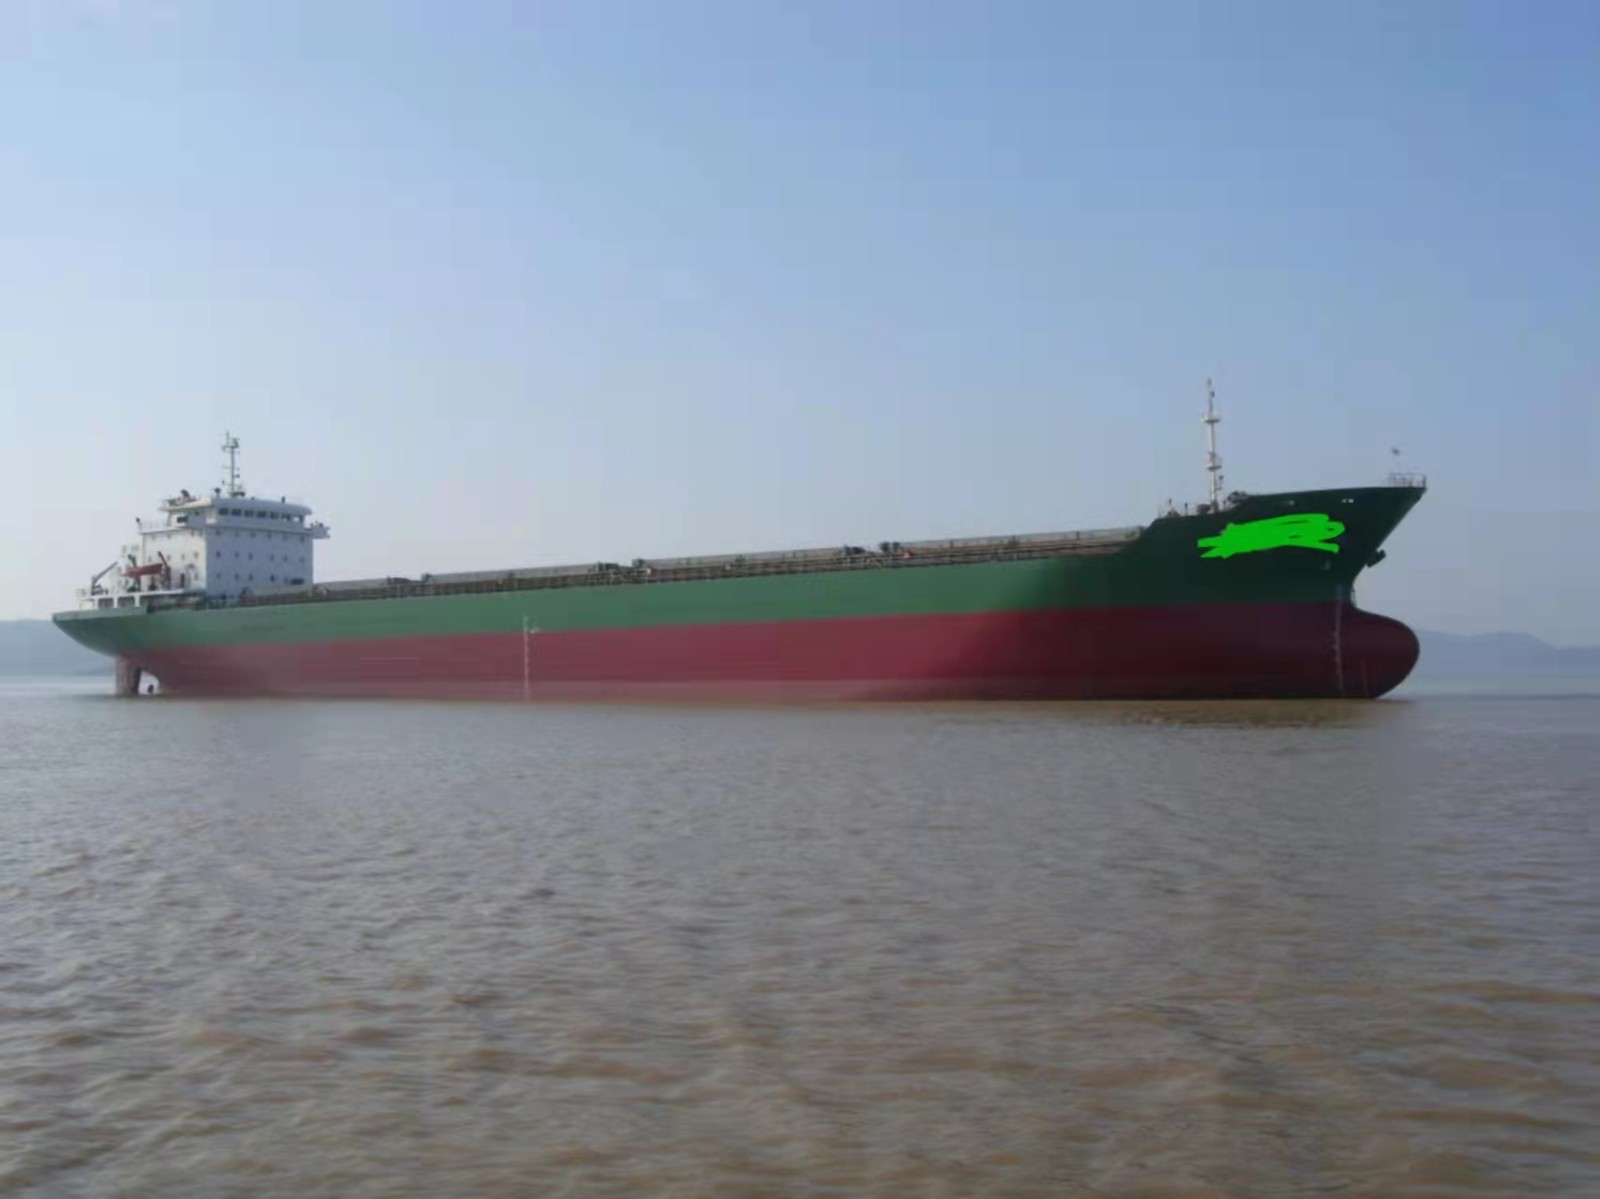 出售：20360吨散货船（单机）